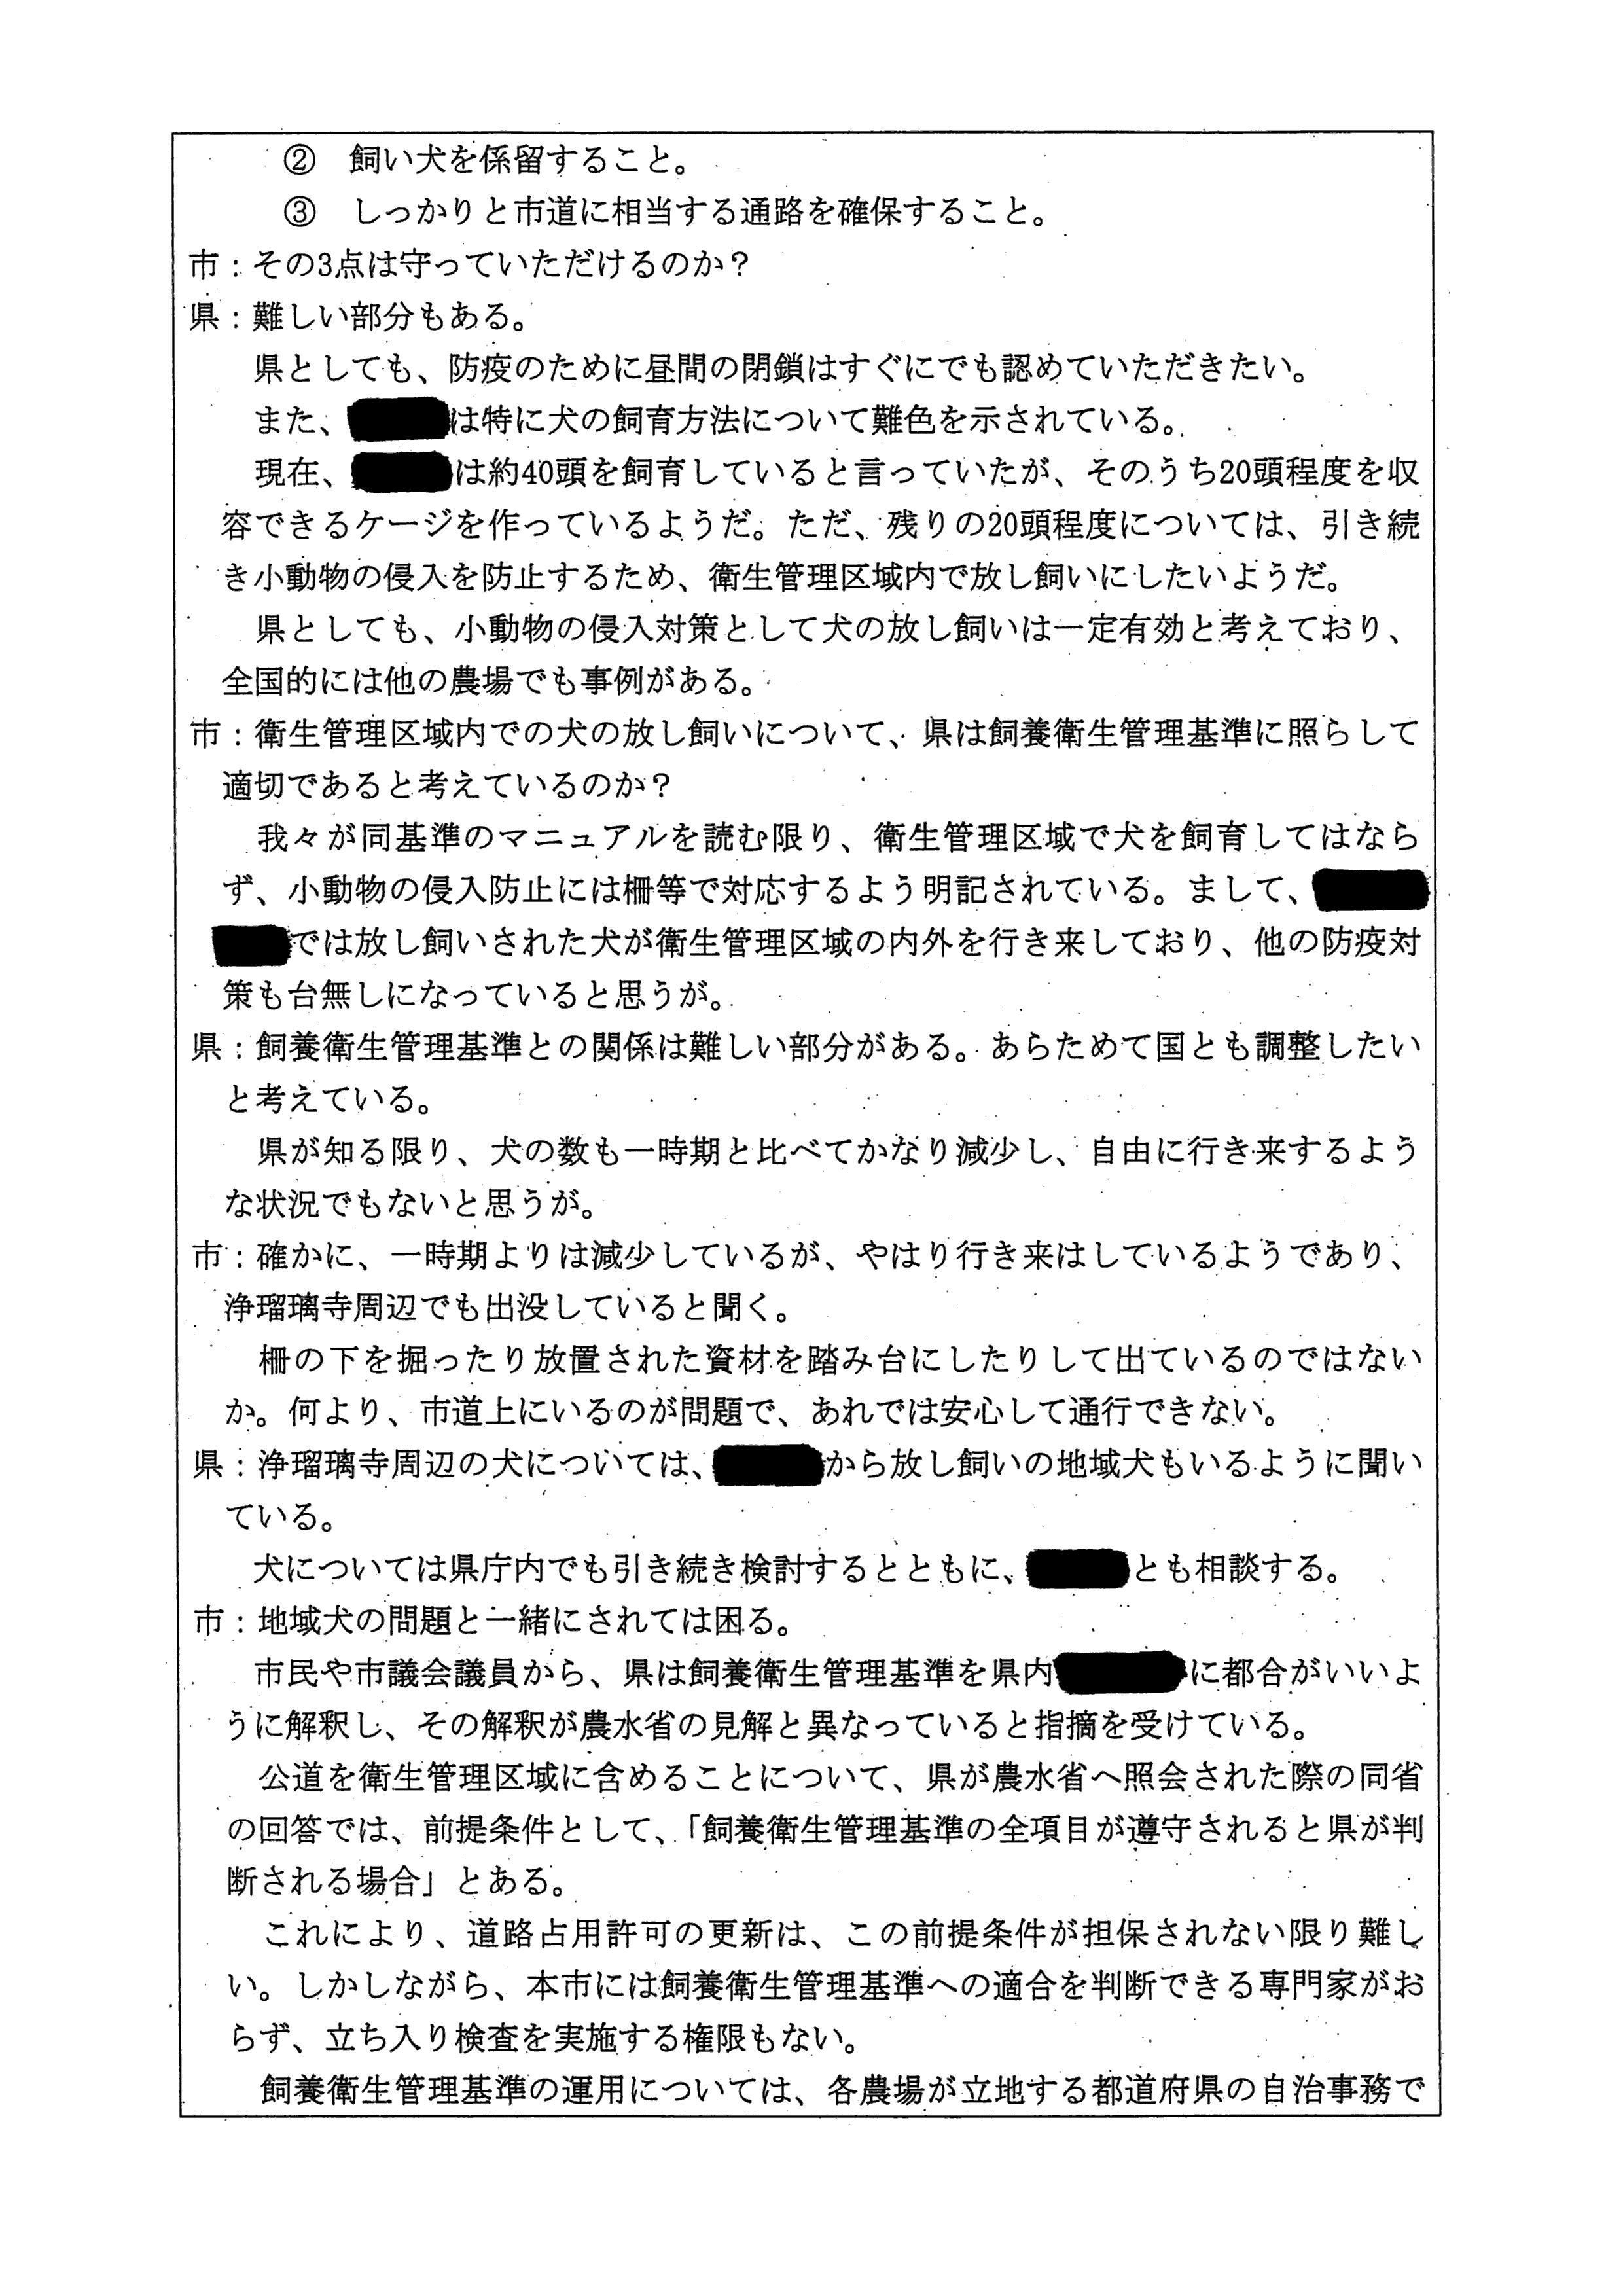 令和4(2022)年2月25日 村田商店に対する市道（加2092号）占用許可について（奈良県との協議）-03